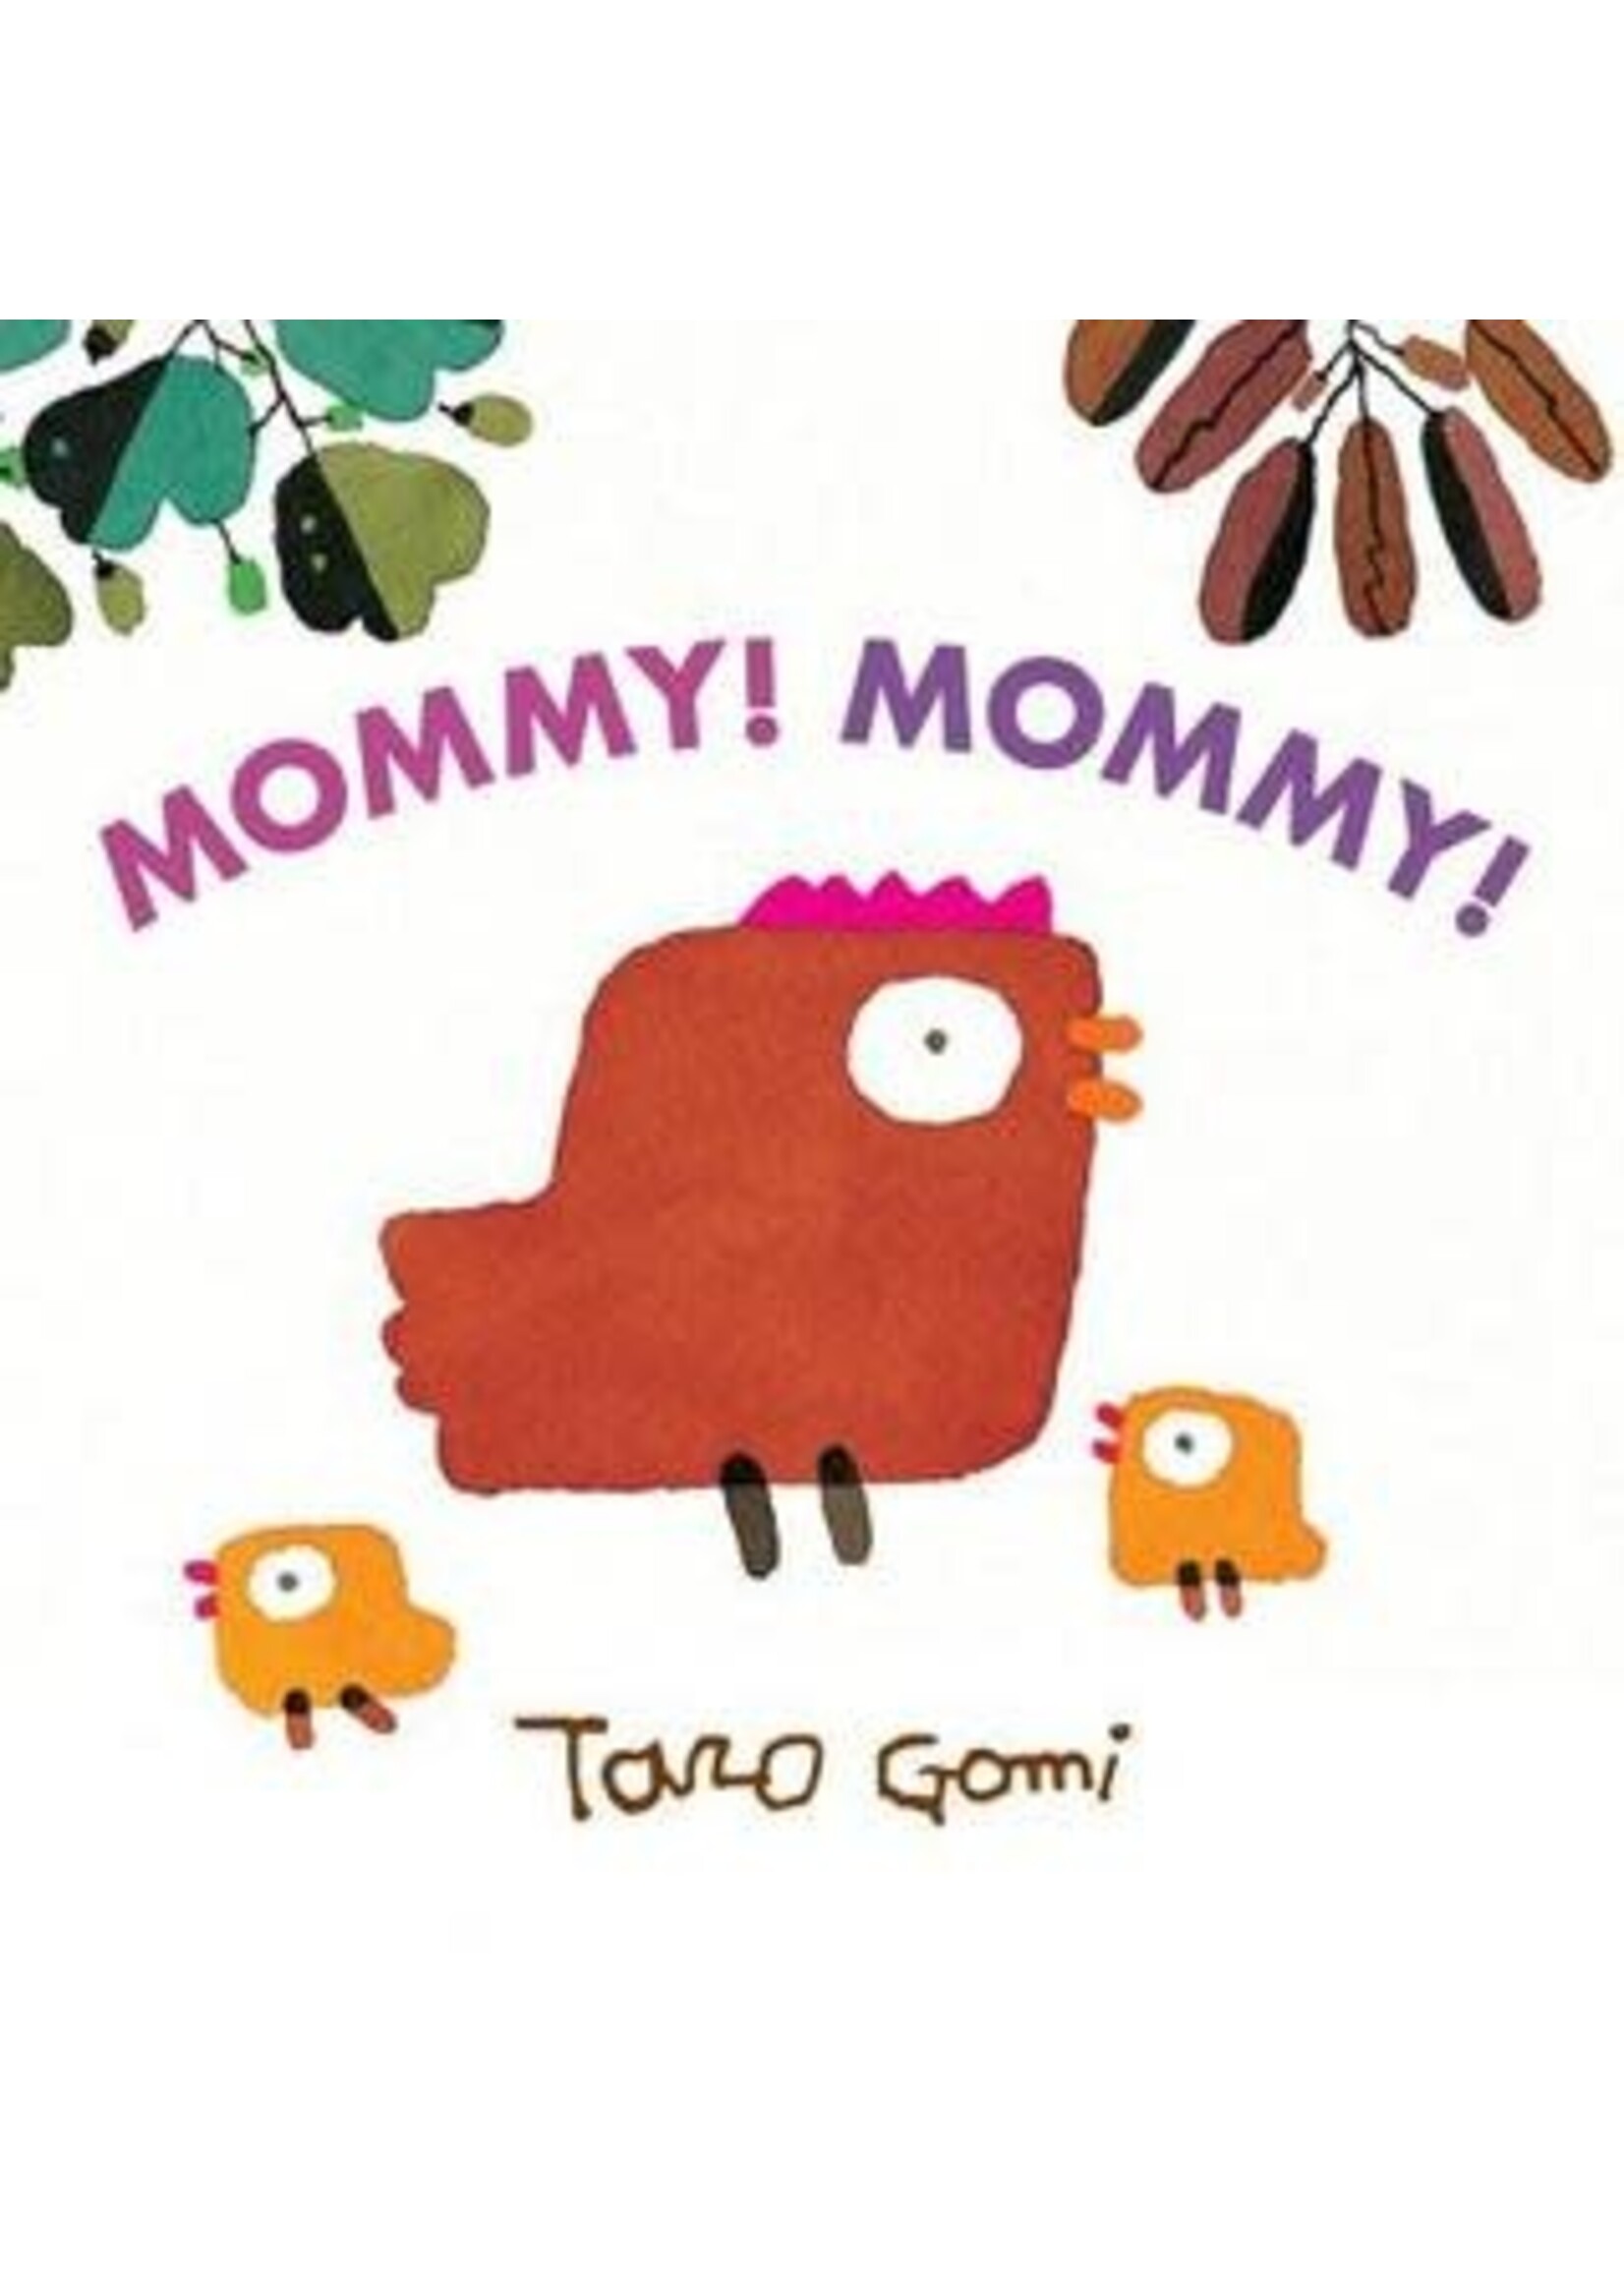 Mommy! Mommy! by Taro Gomi